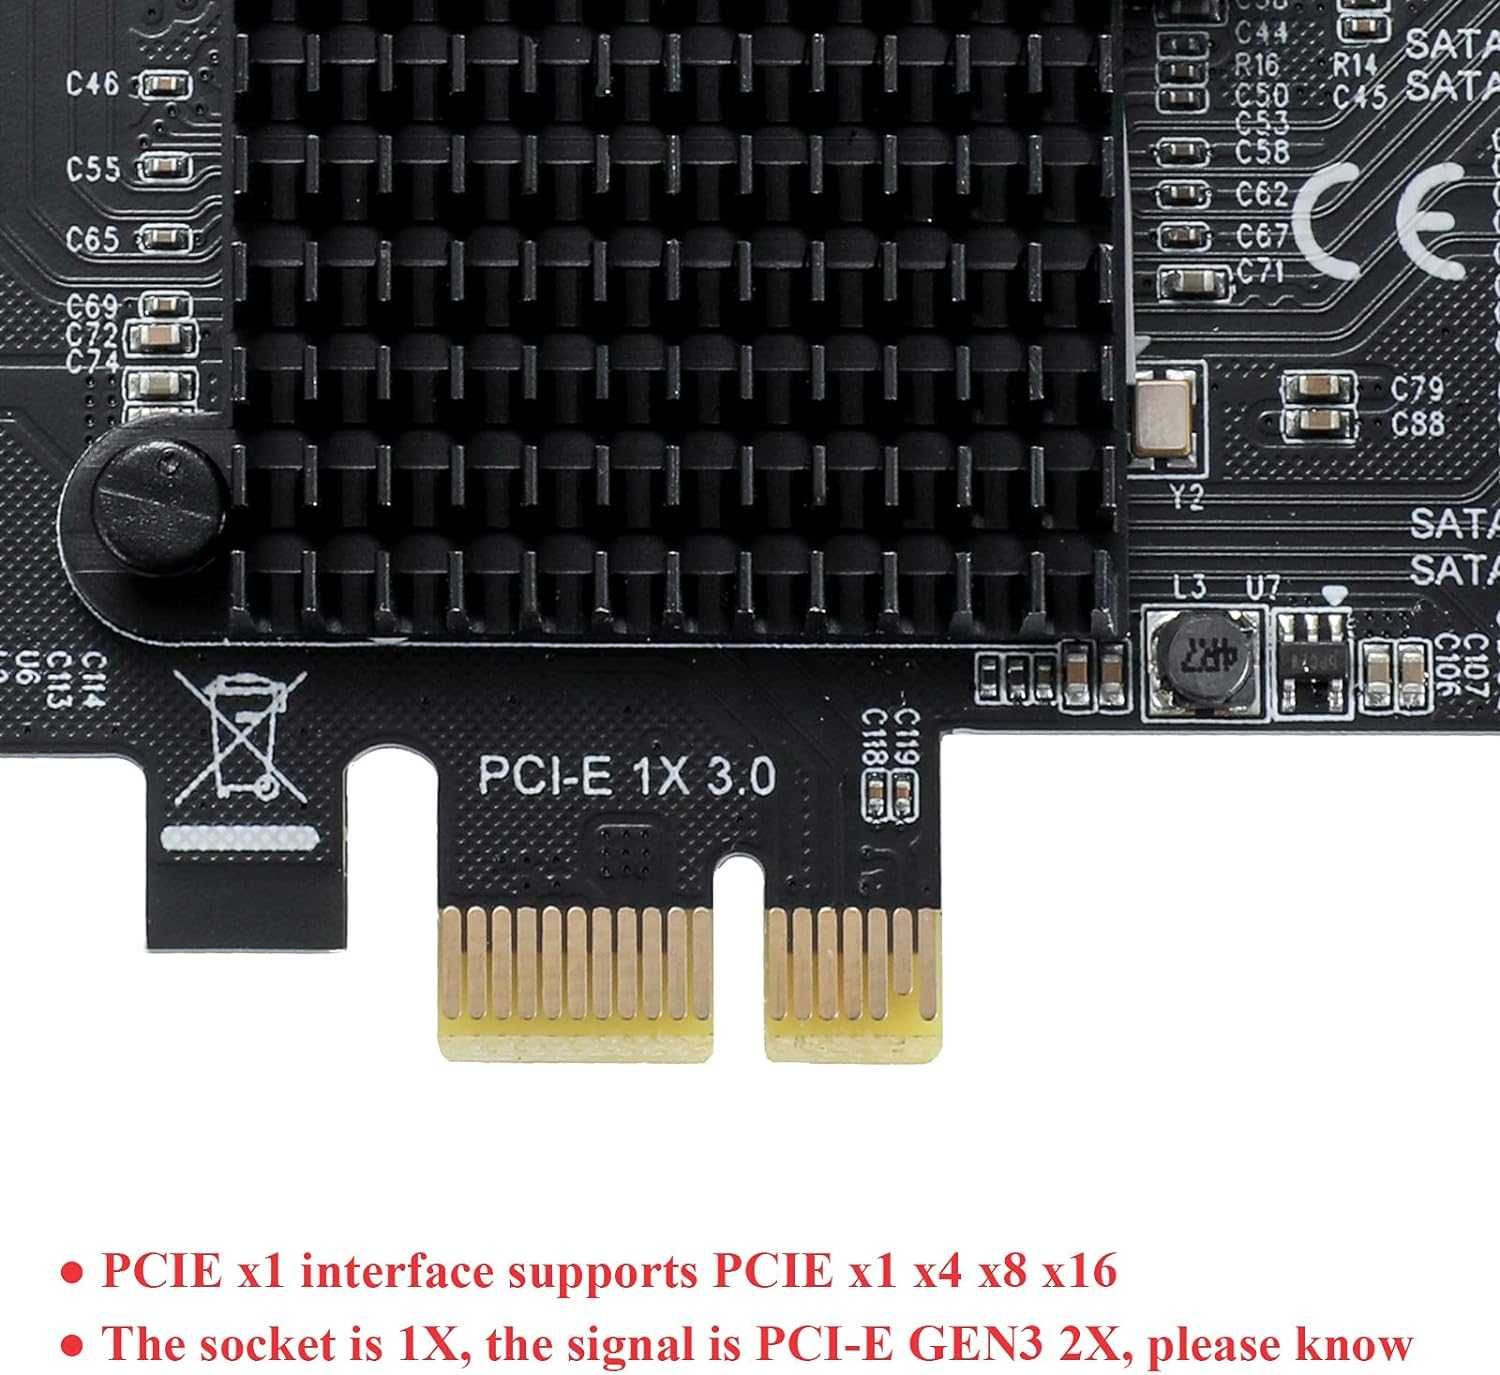 Karta PCI-E 1x 3.0 Port SATA rozszerzenie 10 dysków do 6Gps + kable